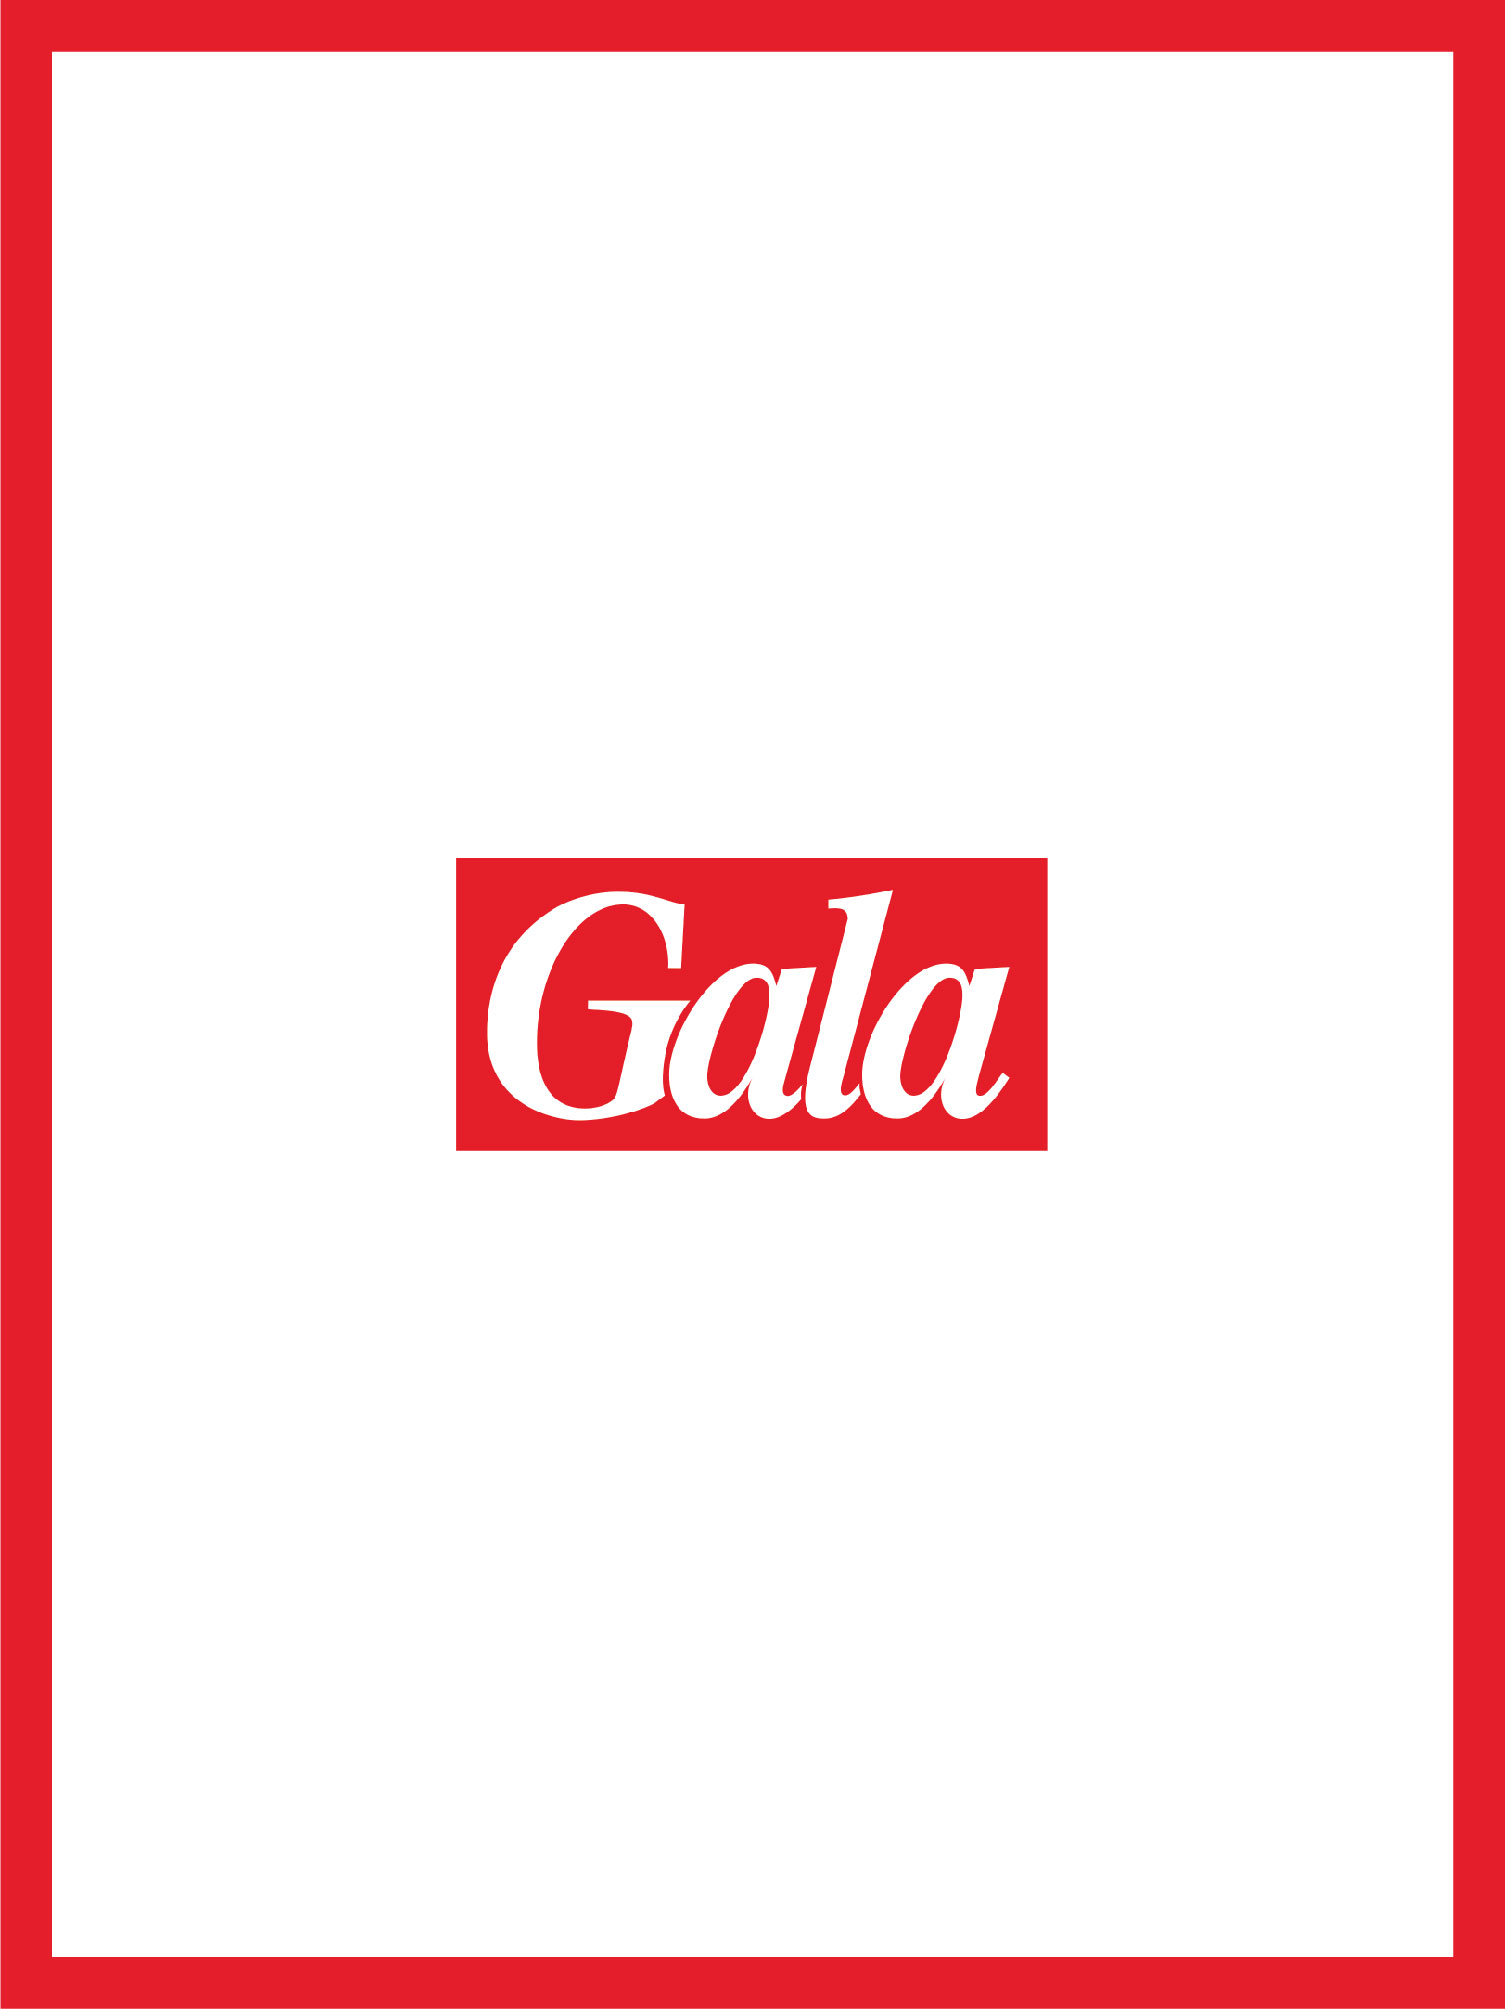 couverture et logo gala